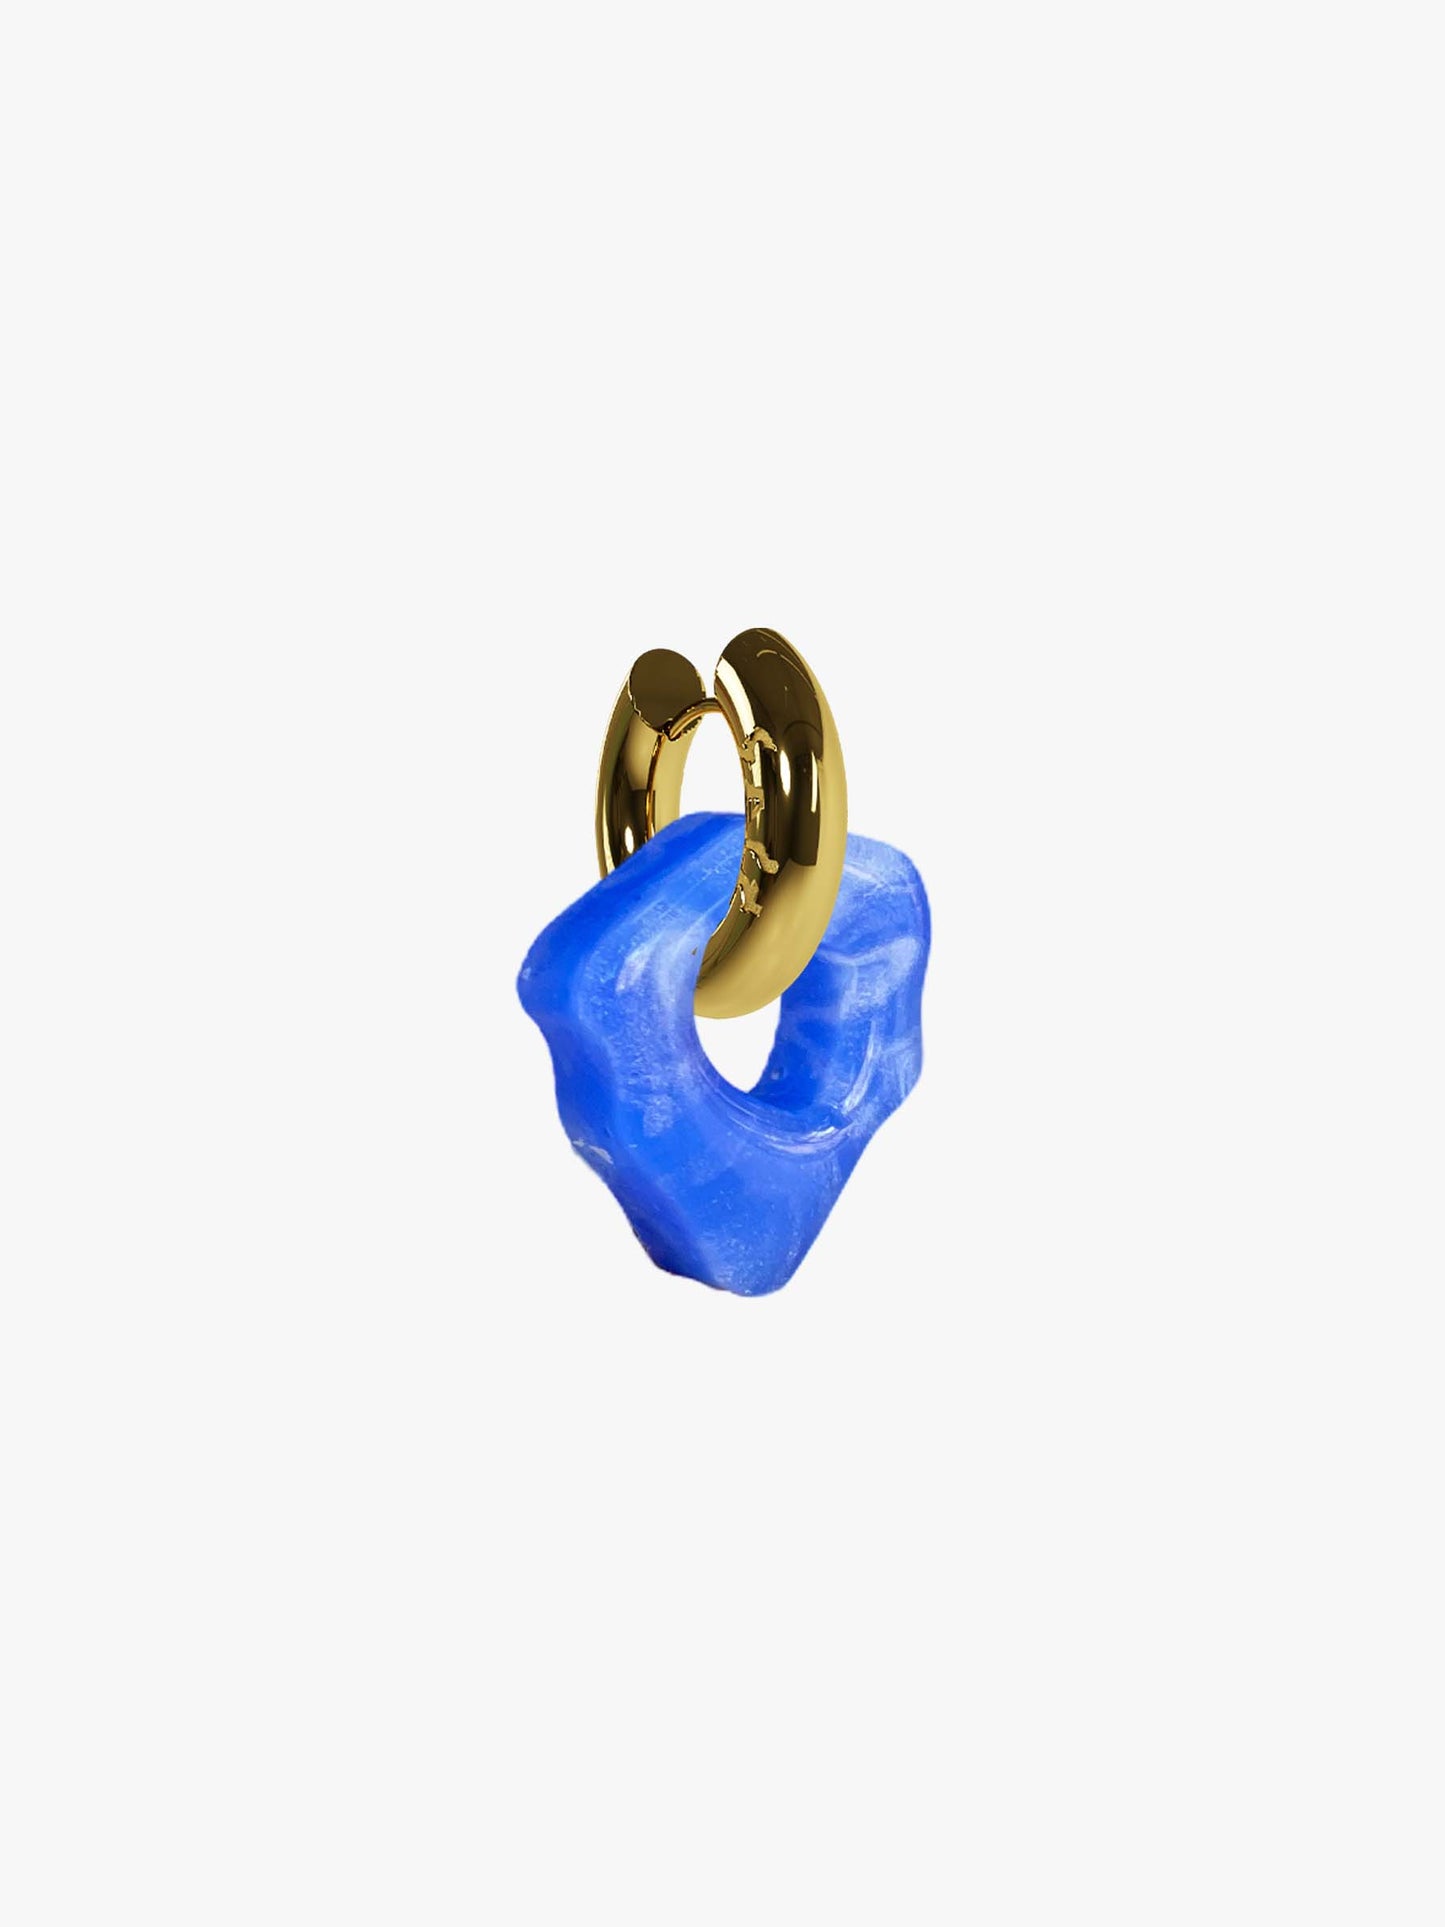 Ami Ora ocean blue gold earring (pair)